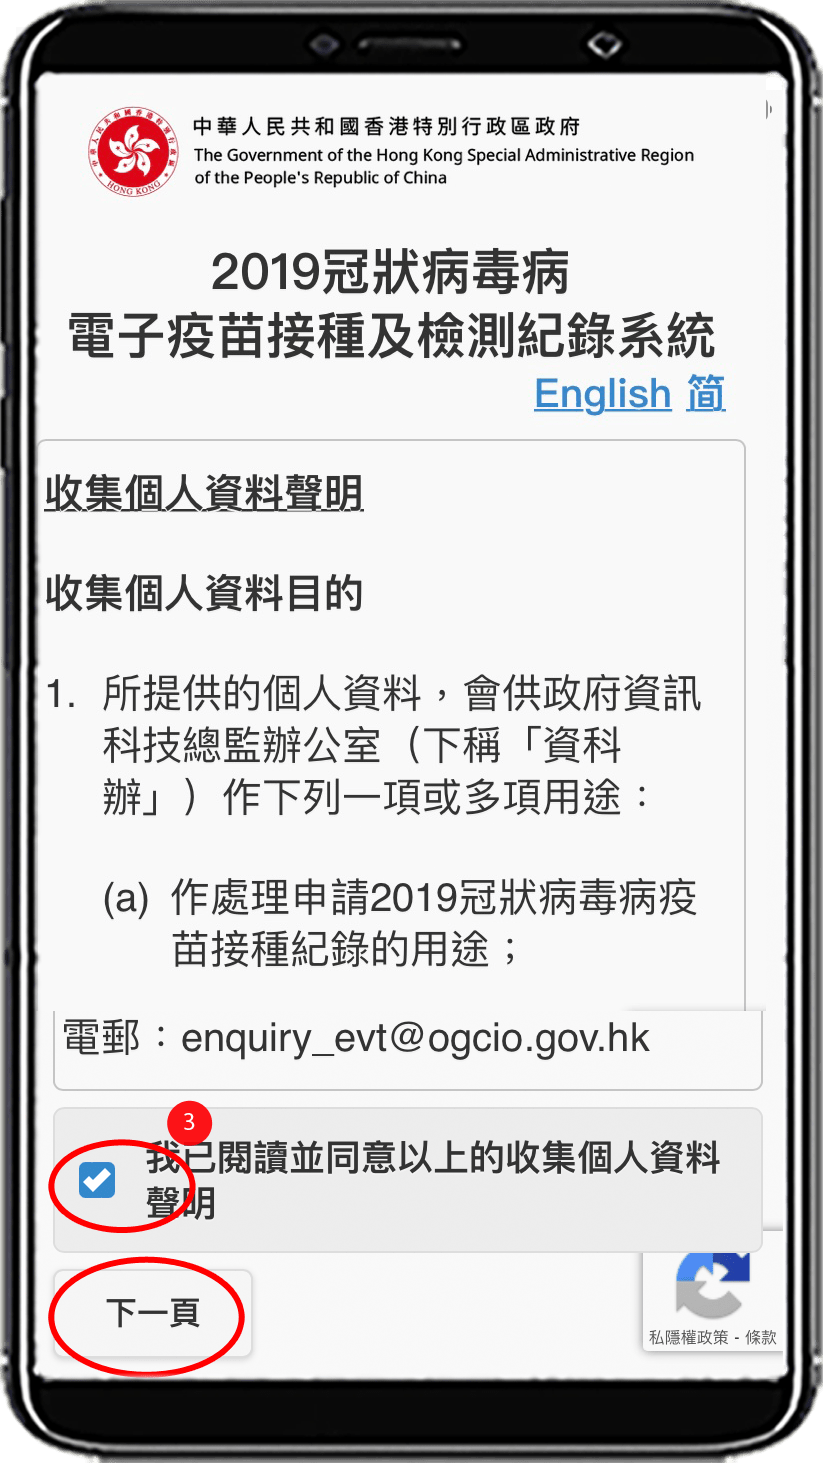 申請人須閱讀並同意收集個人資料聲明，剔選方格後按[下一頁]按鈕。  	  4. 選擇「身份證明文件類型」(例如「香港身份證」，「香港出生證明書」或「其他護照或旅遊證件」)。  5. 輸入「身份證明文件號碼」，包括括號內所有的英文字母和數字，無須輸入括號。  6a. 若選擇 「香港身份證」， 輸入香港身份證簽發日期。  6b. 若選擇 「香港出生證明書」 或 「其他護照或旅遊證件」，輸入出生日期 (詳情參考下圖)。  7. 按[提交]按鈕.    圖6b ，當選擇「香港出生證明書」或「其他護照或旅遊證件」，需要輸入出生日期。  	  8. 若有相關紀錄，頁面會顯示你的 2019冠狀病毒病「電子針卡」。  9. 按右下角的按鈕「儲存記錄」，將「電子針卡」下載到你的桌面或移動設備中。政府網頁圖片